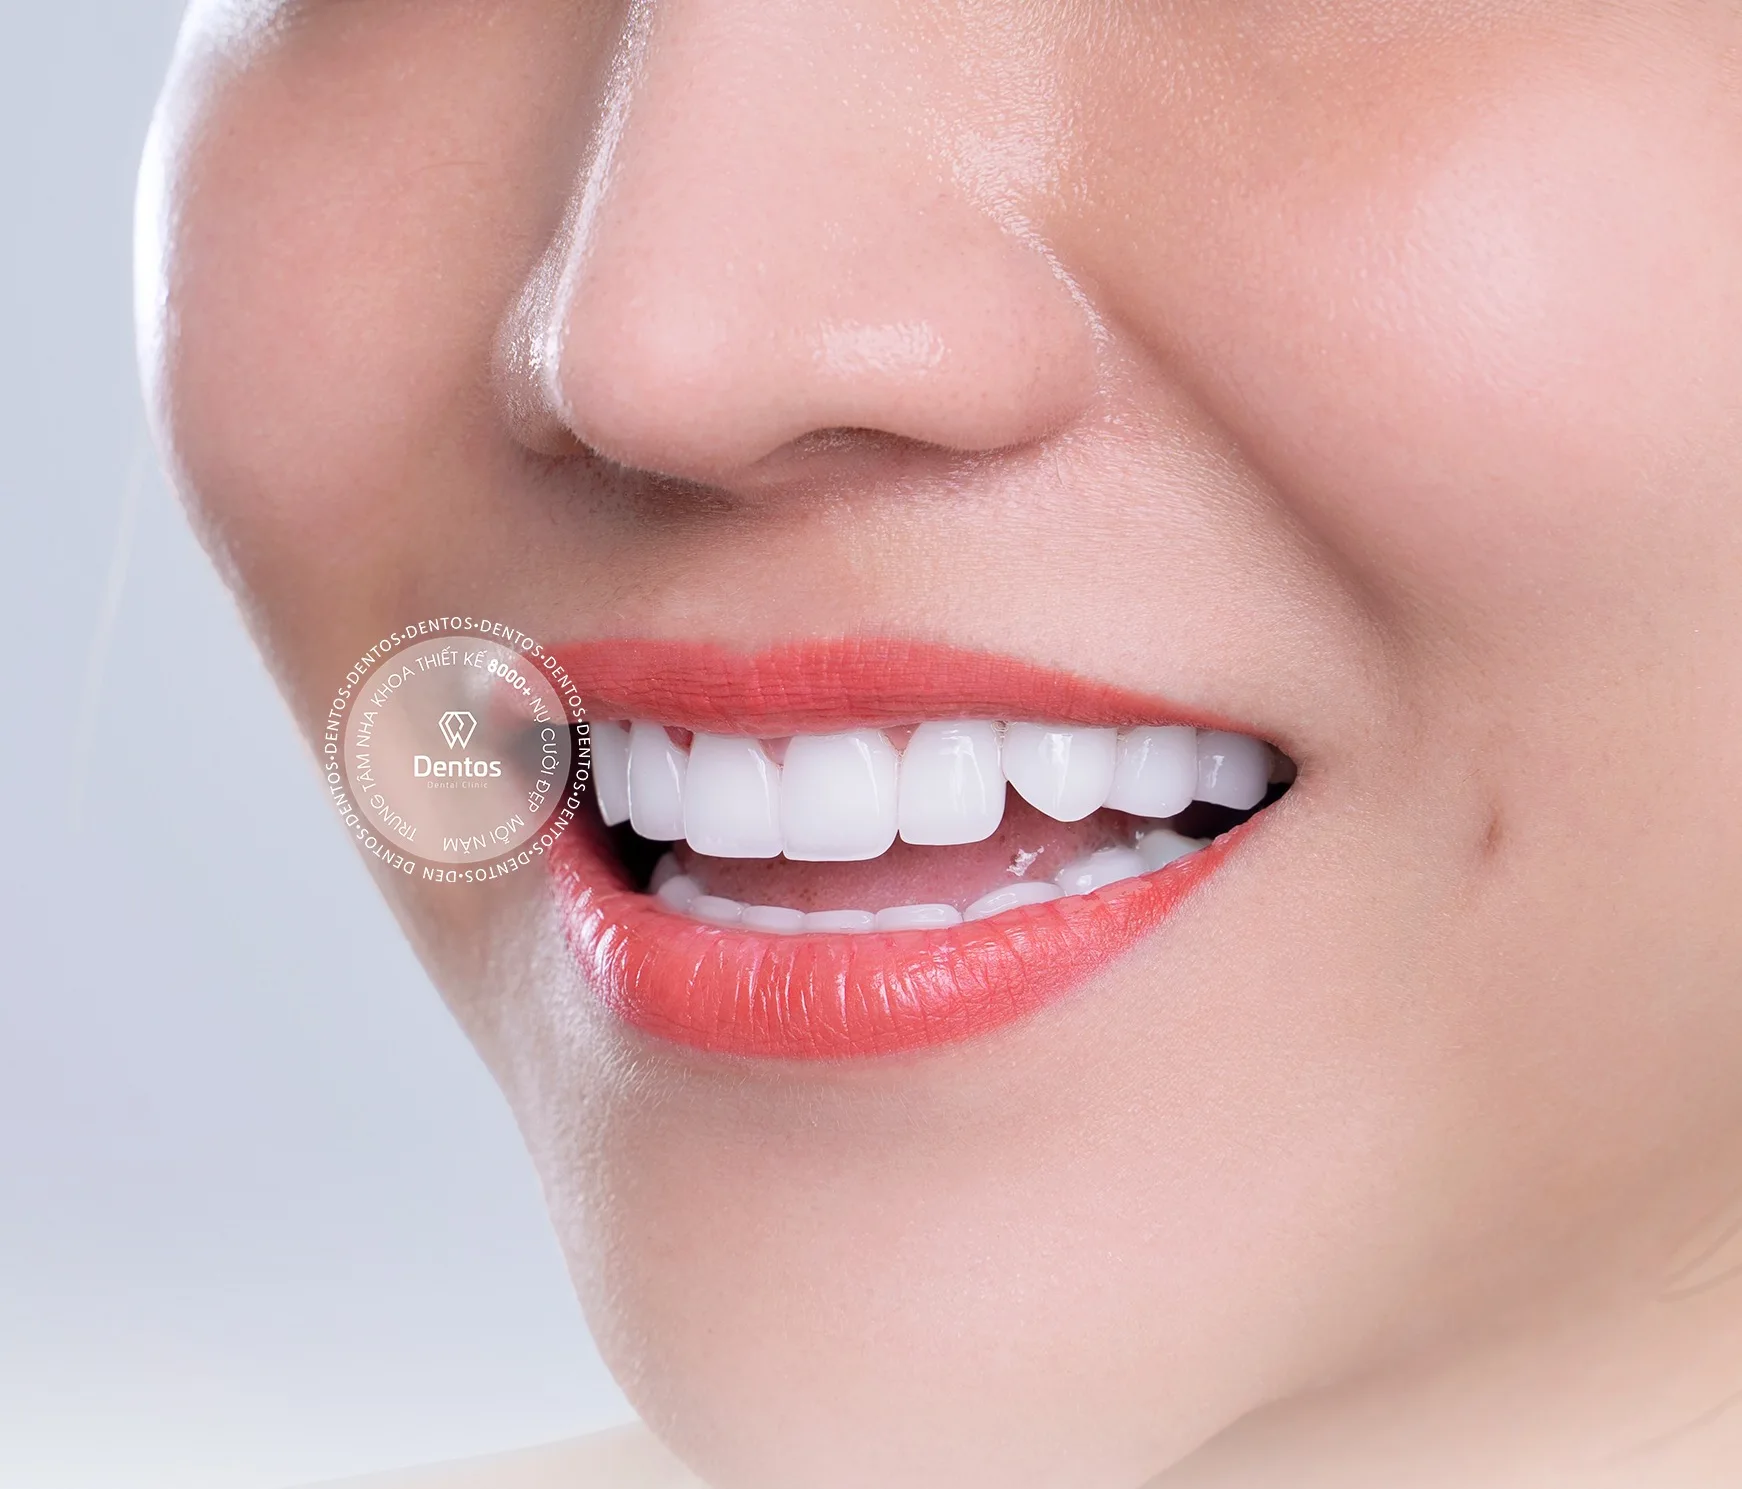 Răng sứ Zirconia DDBio có tốt không? Giá bọc sứ bao nhiêu?